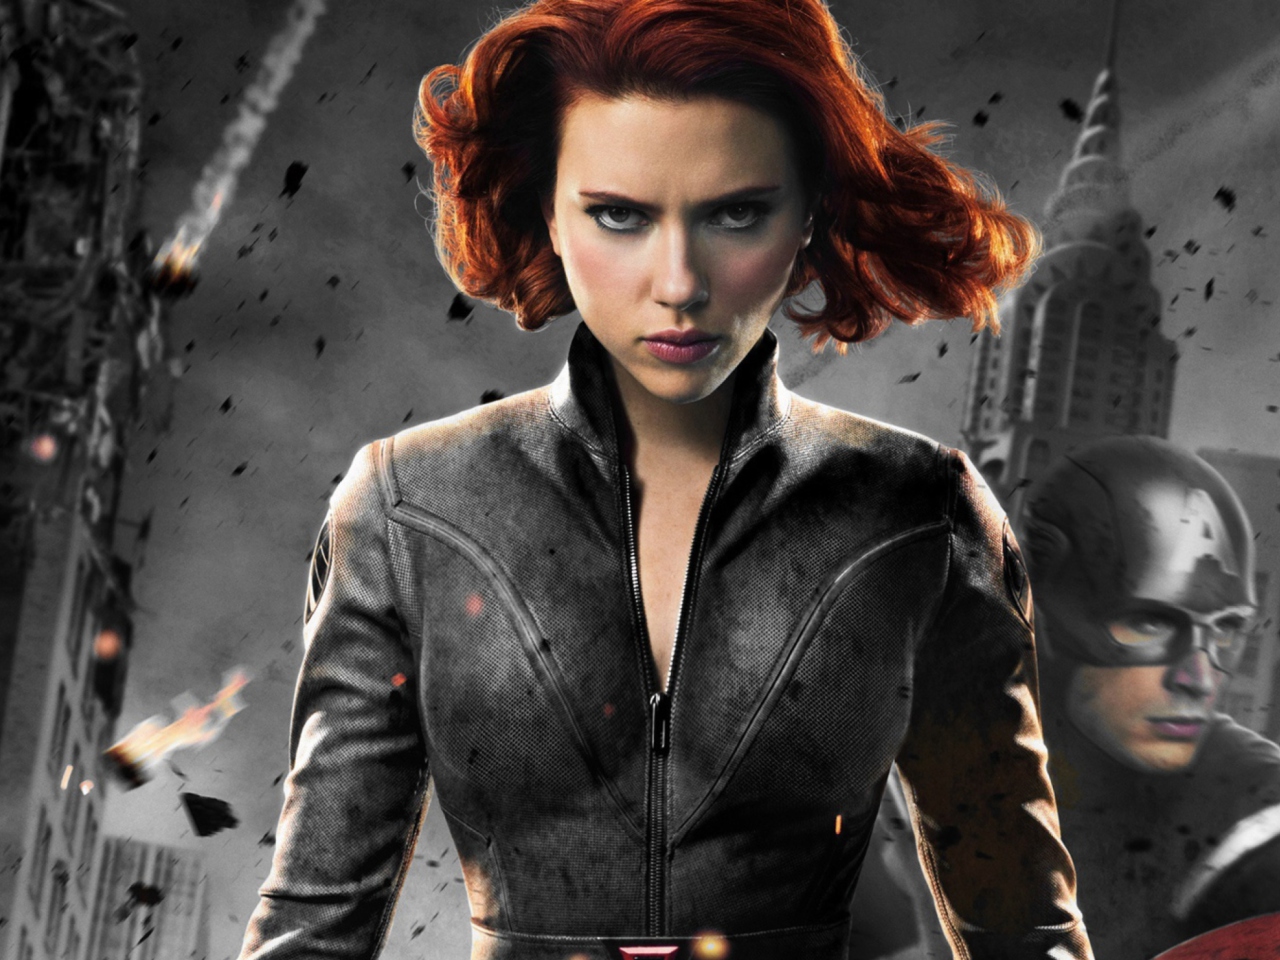 Das Black Widow - The Avengers 2012 Wallpaper 1280x960